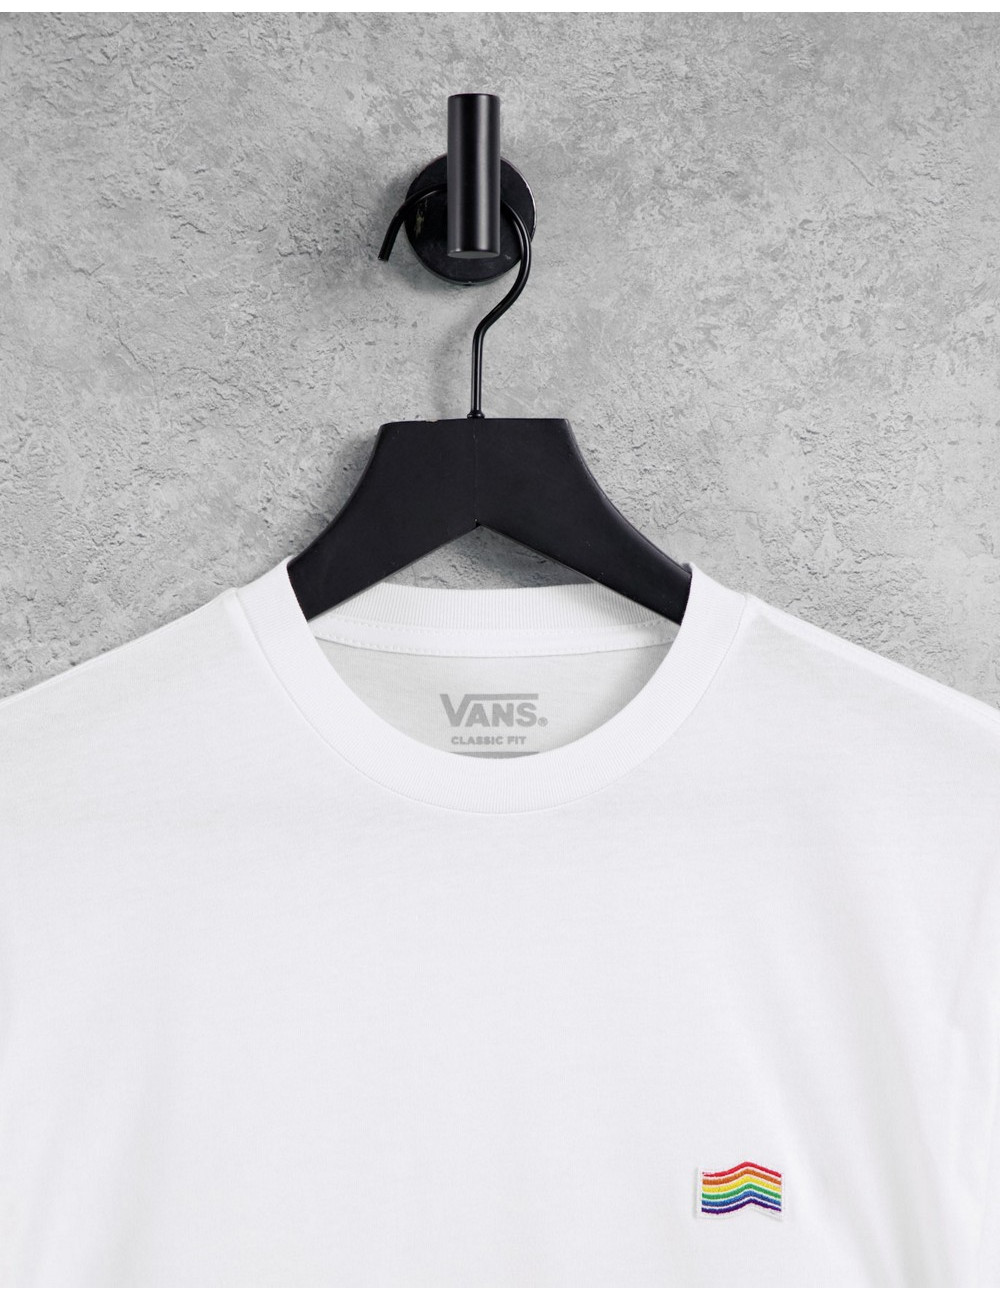 Vans Pride t-shirt in white